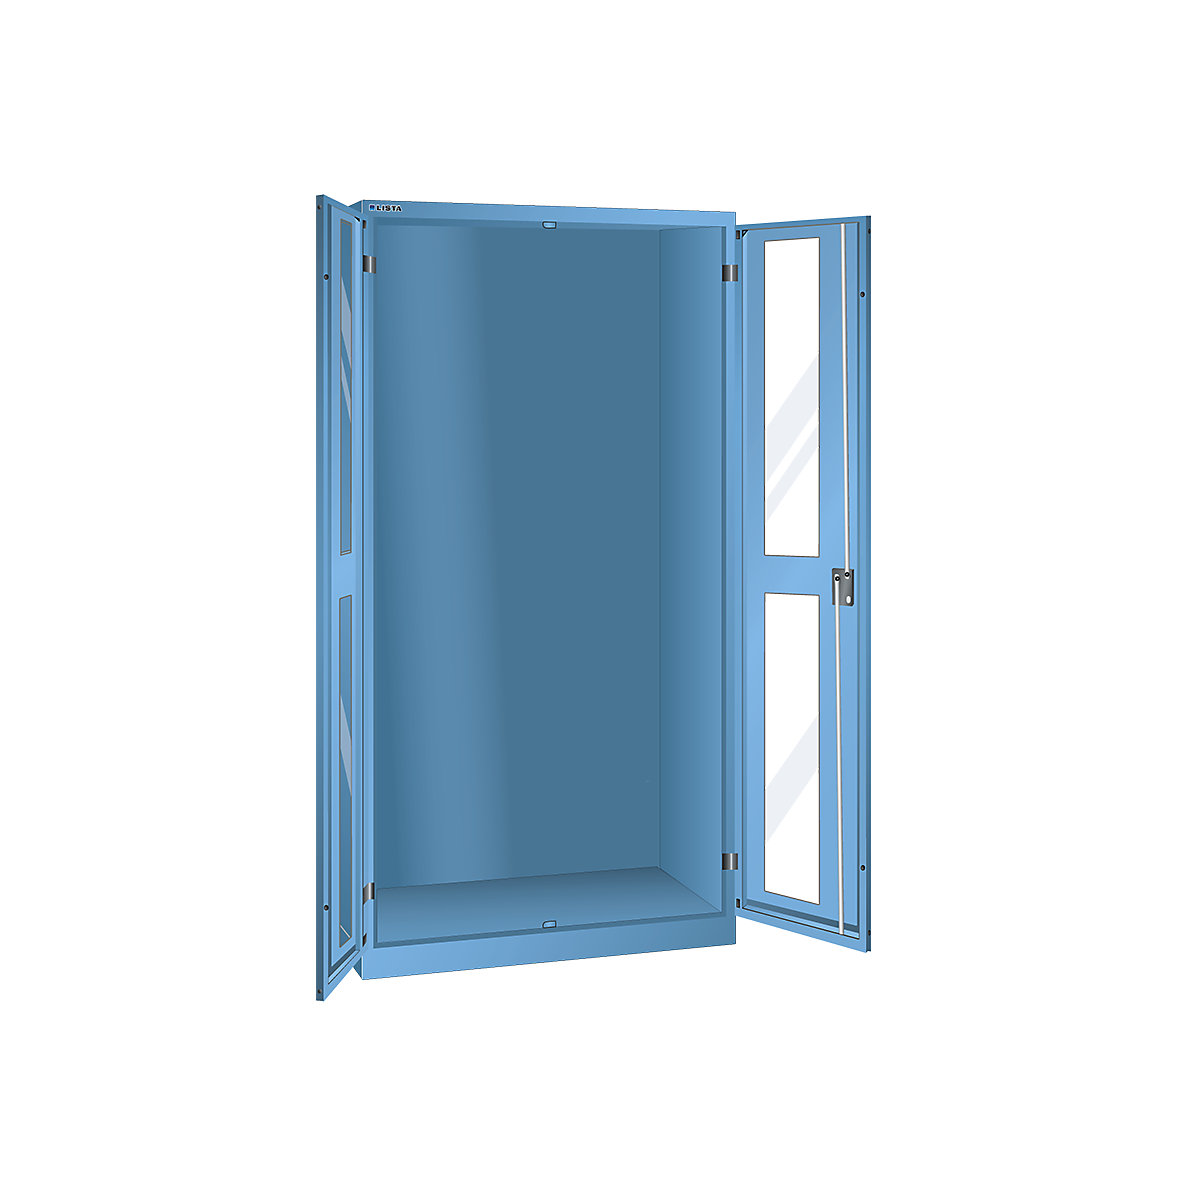 Armário com janelas de visualização, AxLxP 1950 x 1000 x 580 mm - LISTA